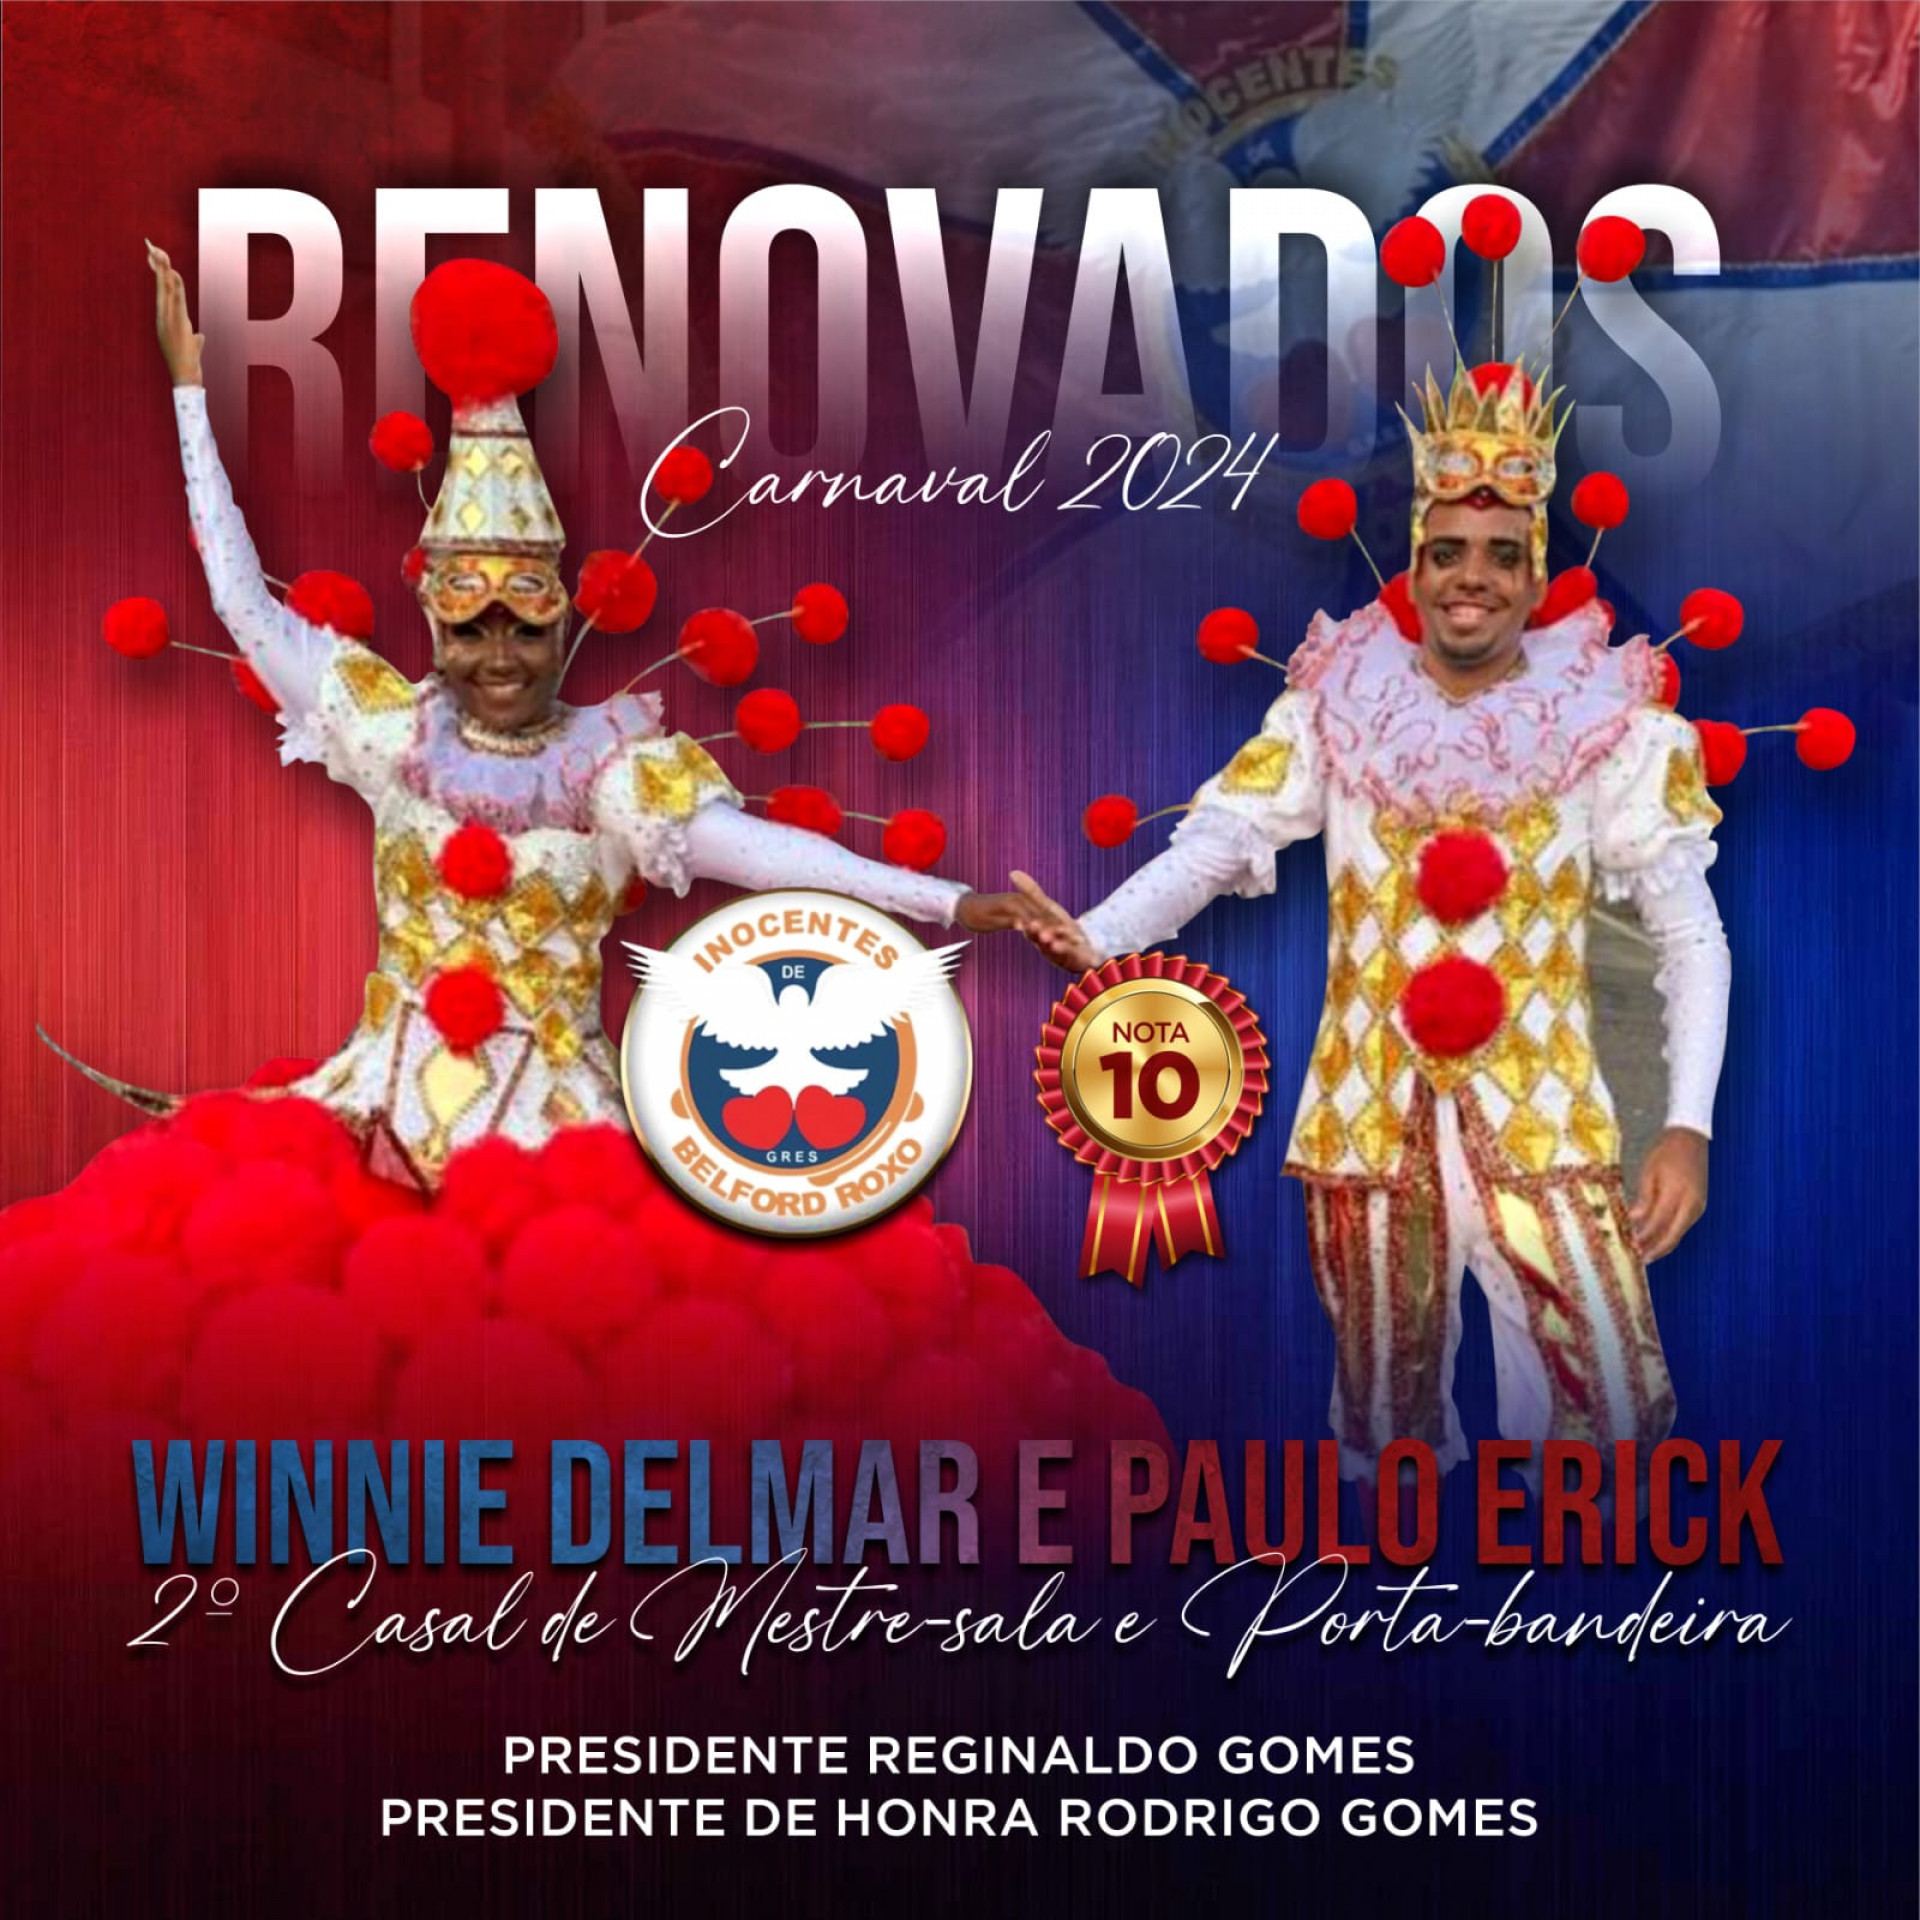 Paulo Erick e Winnie Delmar continuarão brilhando na Inocentes de Belford Roxo em 2024 - Divulgação